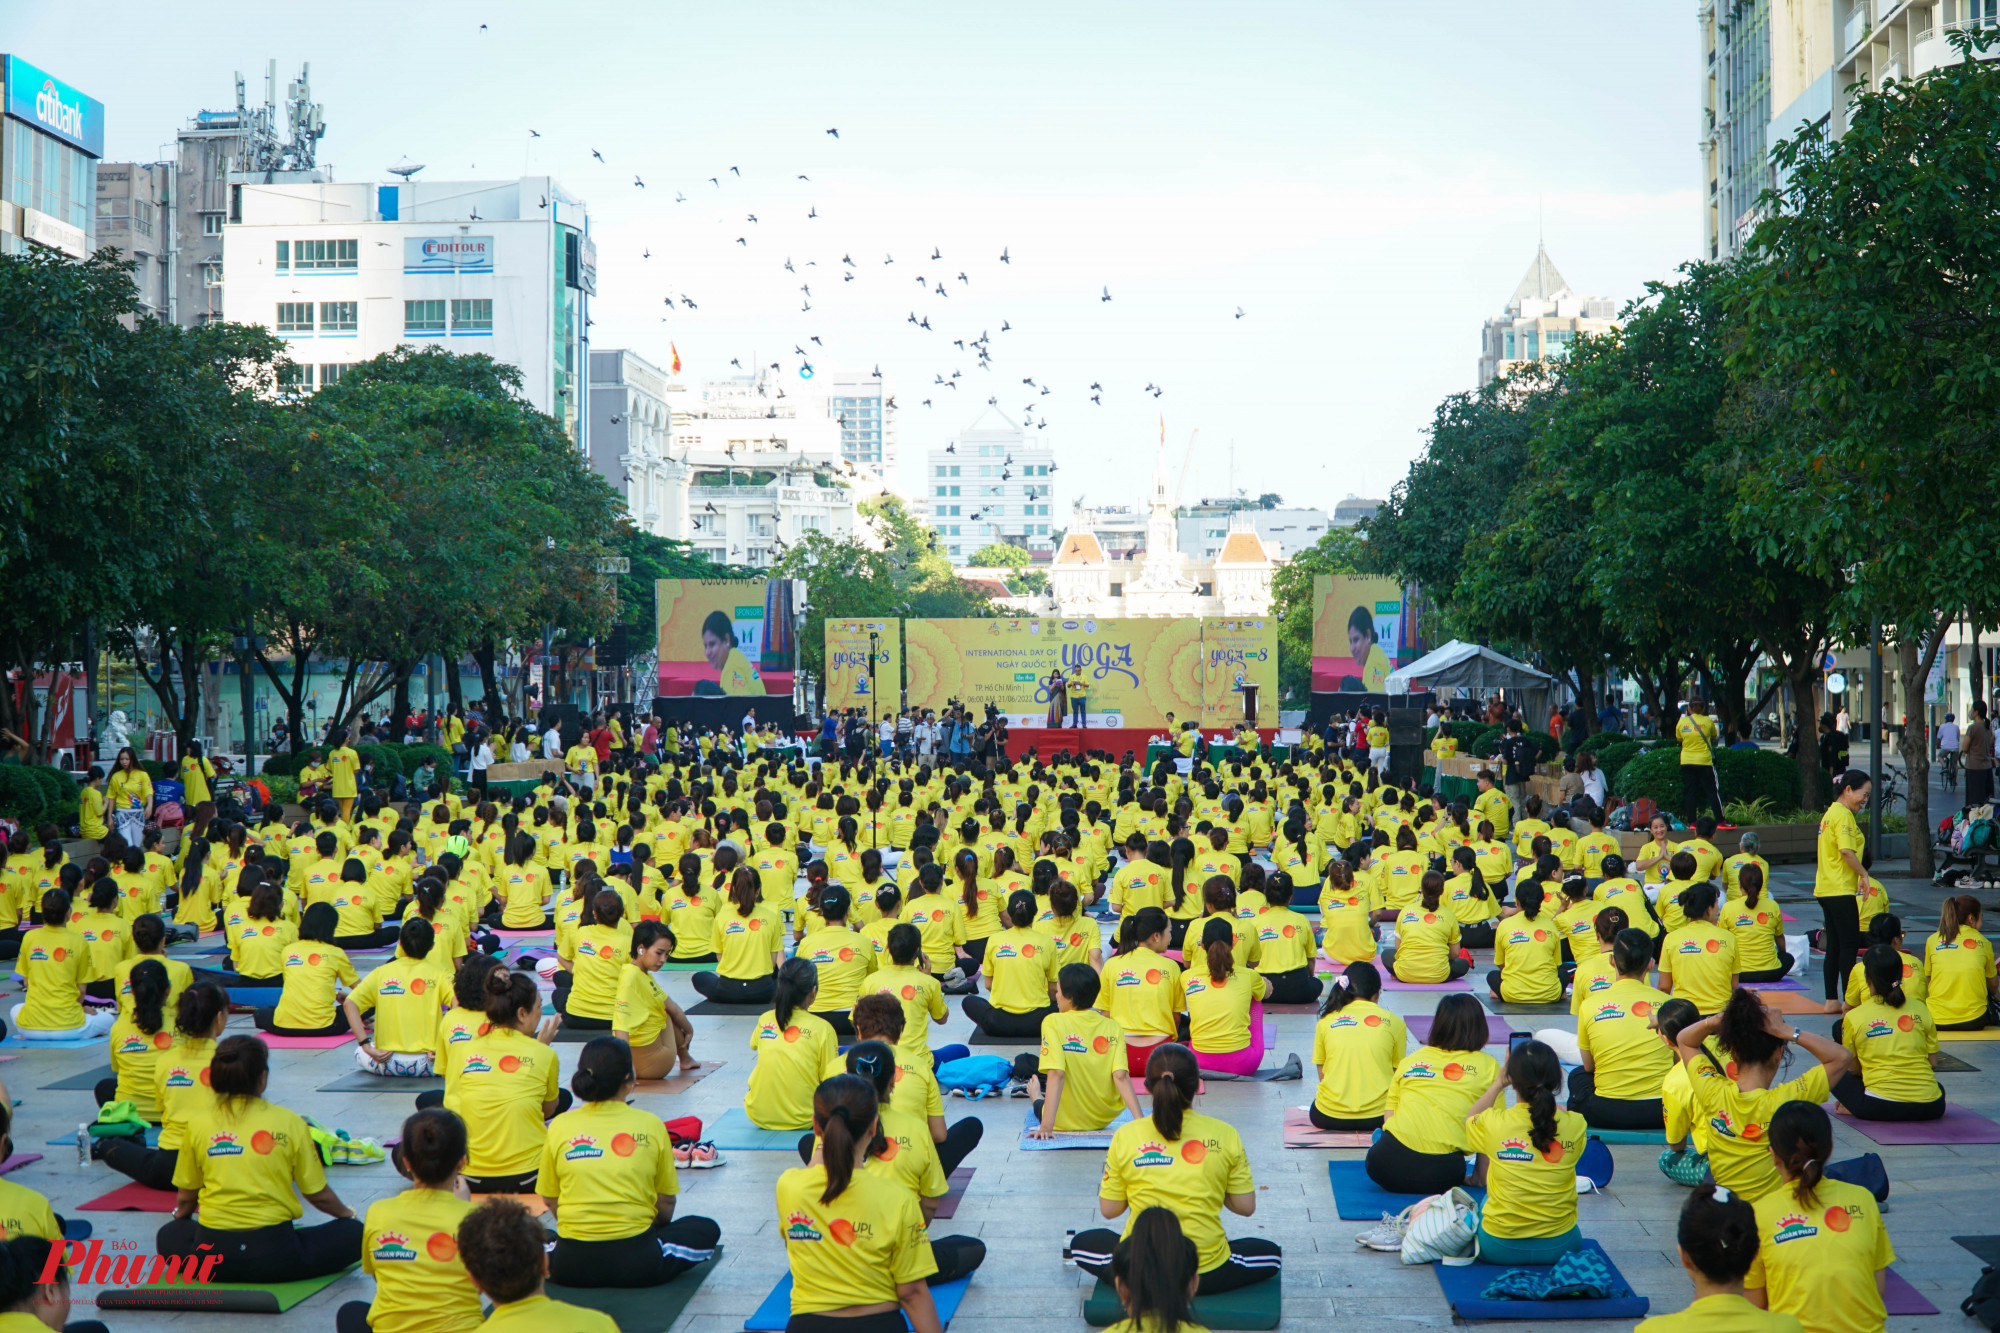 Sáng 21/6, Ngày Quốc tế Yoga lần thứ 8 được diễn ra tại Phố đi bộ Nguyễn Huệ, Quận 1 với khoảng 1.000 người thực hành bộ môn yoga.